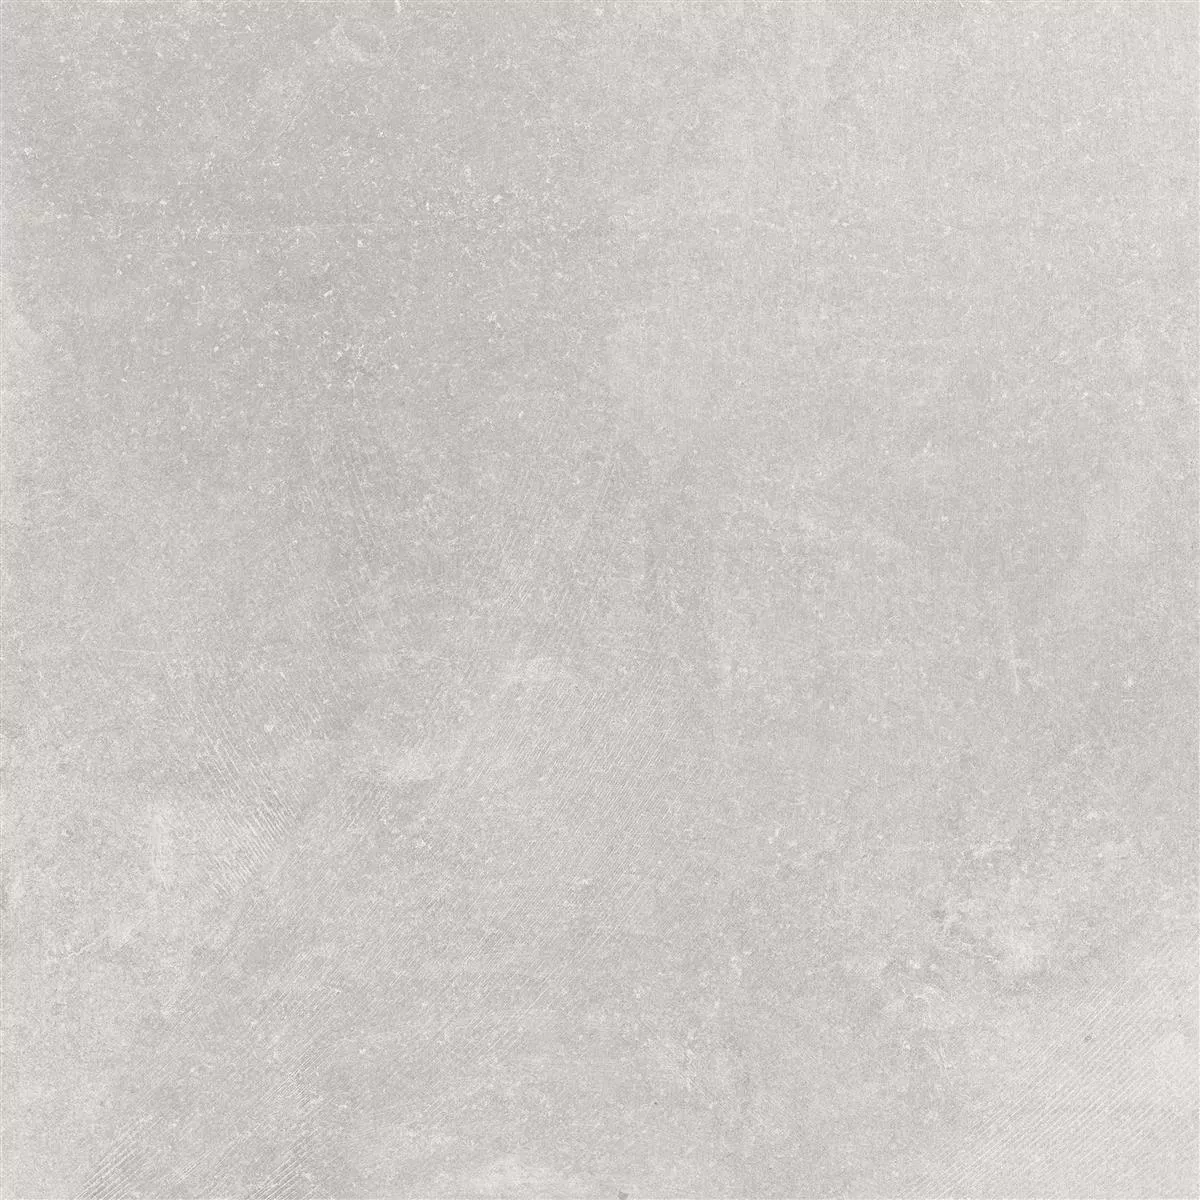 Πλακάκια Δαπέδου Πέτρινη Όψη Horizon Γκρί 60x60cm